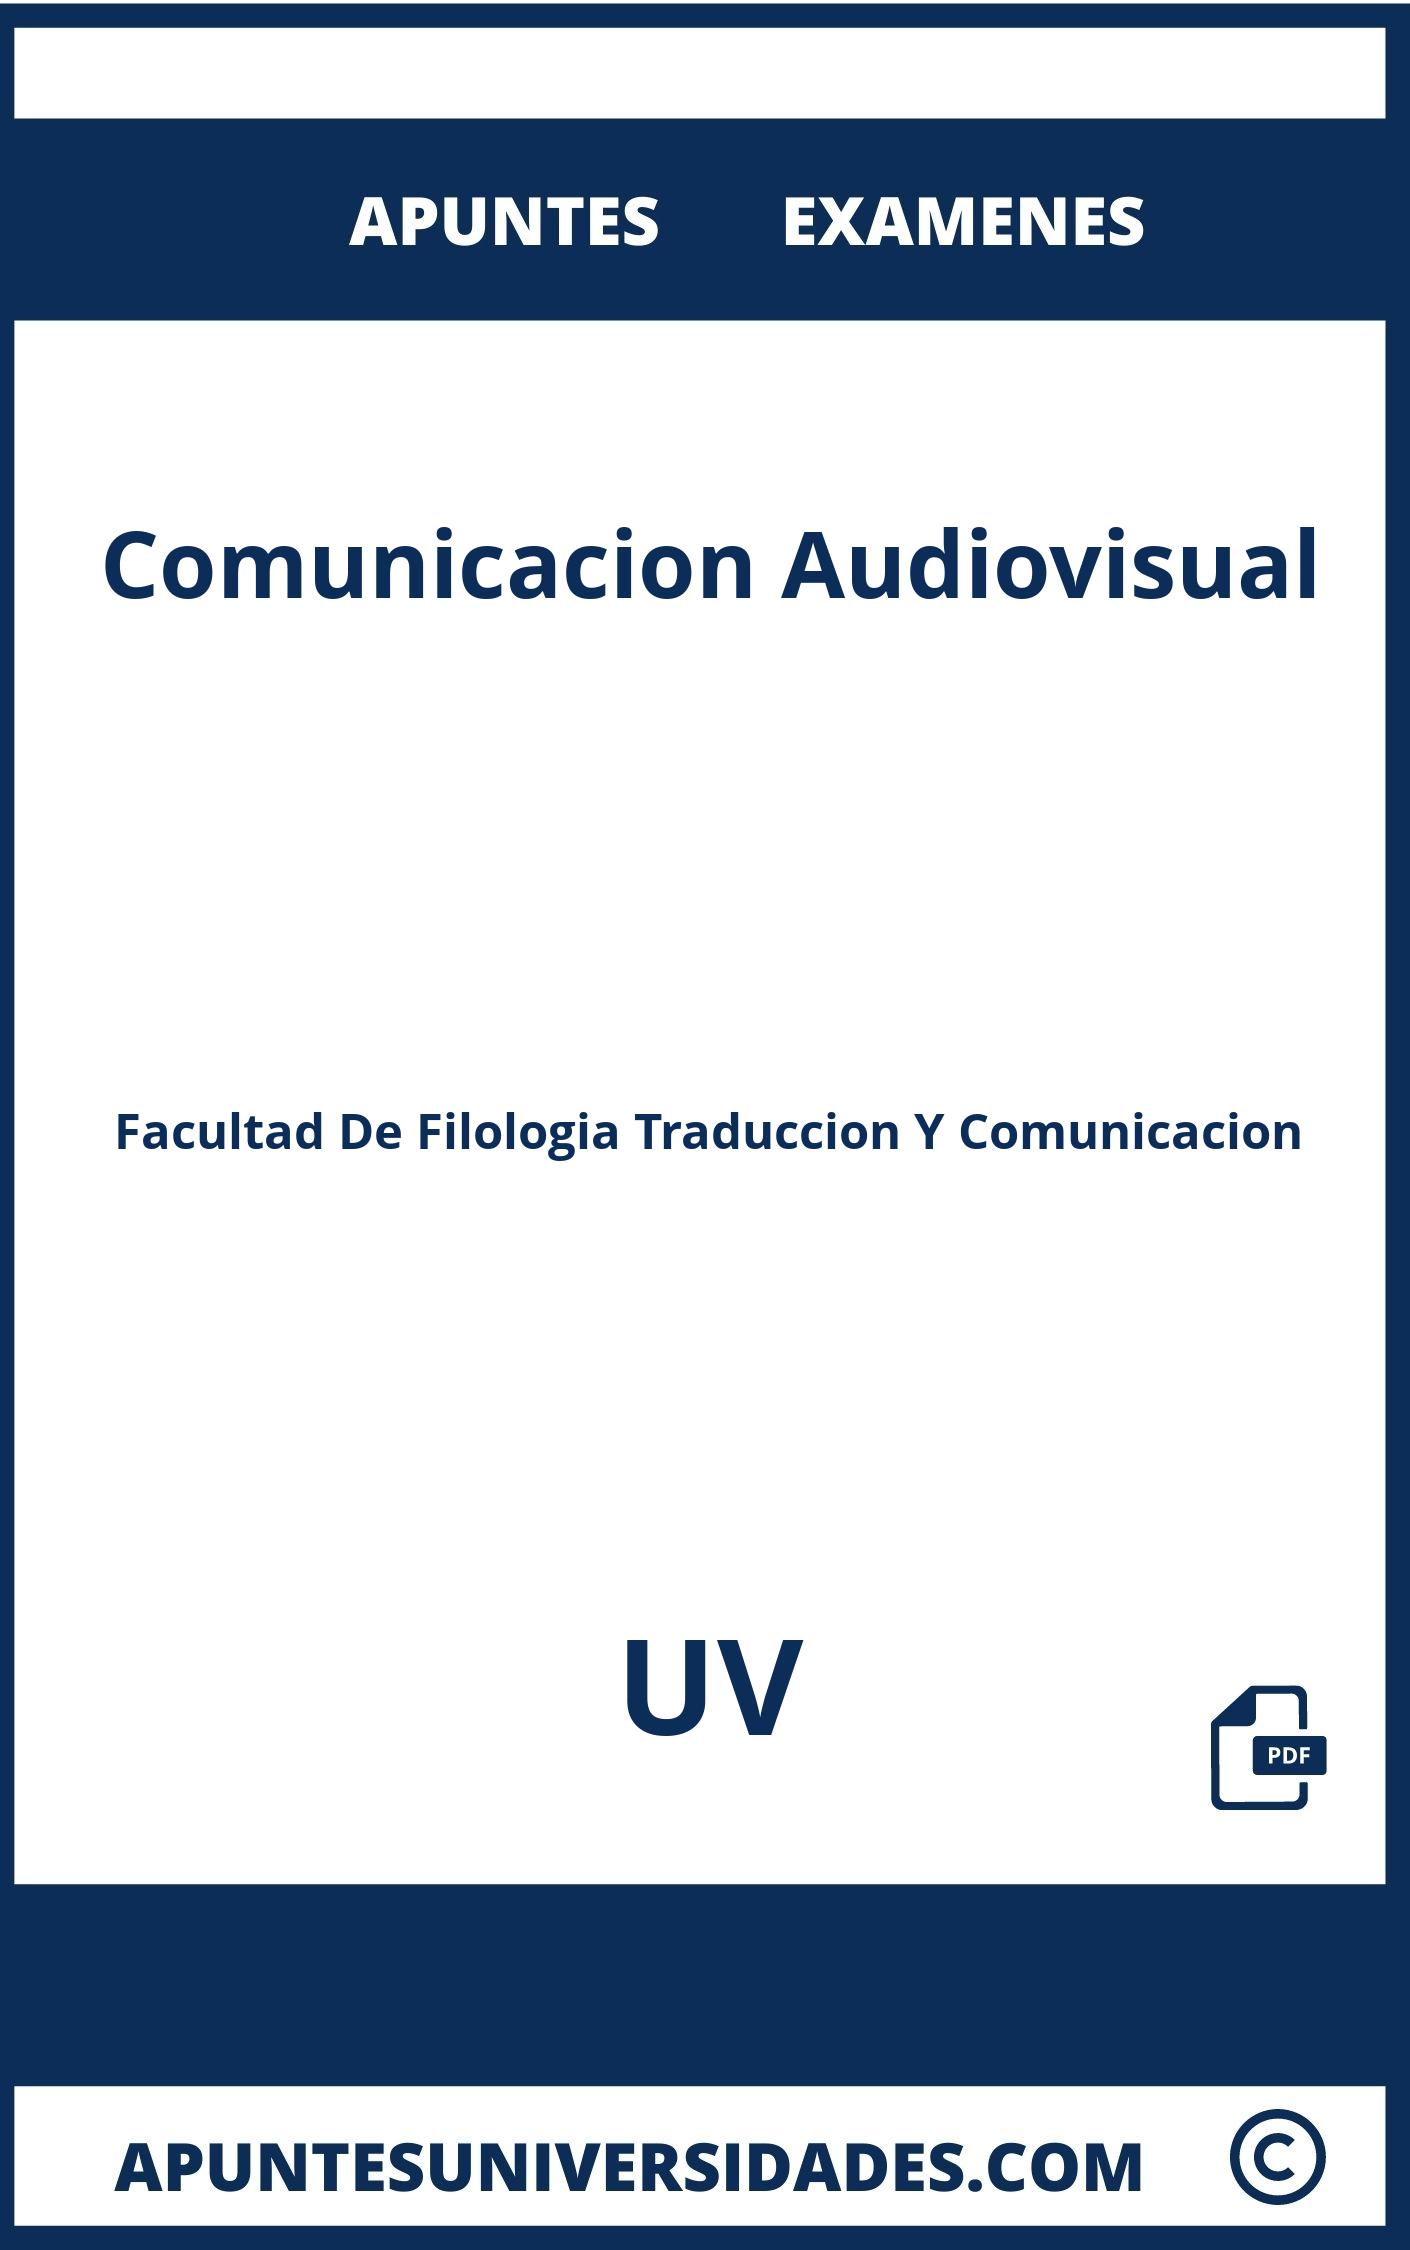 Apuntes y Examenes Comunicacion Audiovisual UV